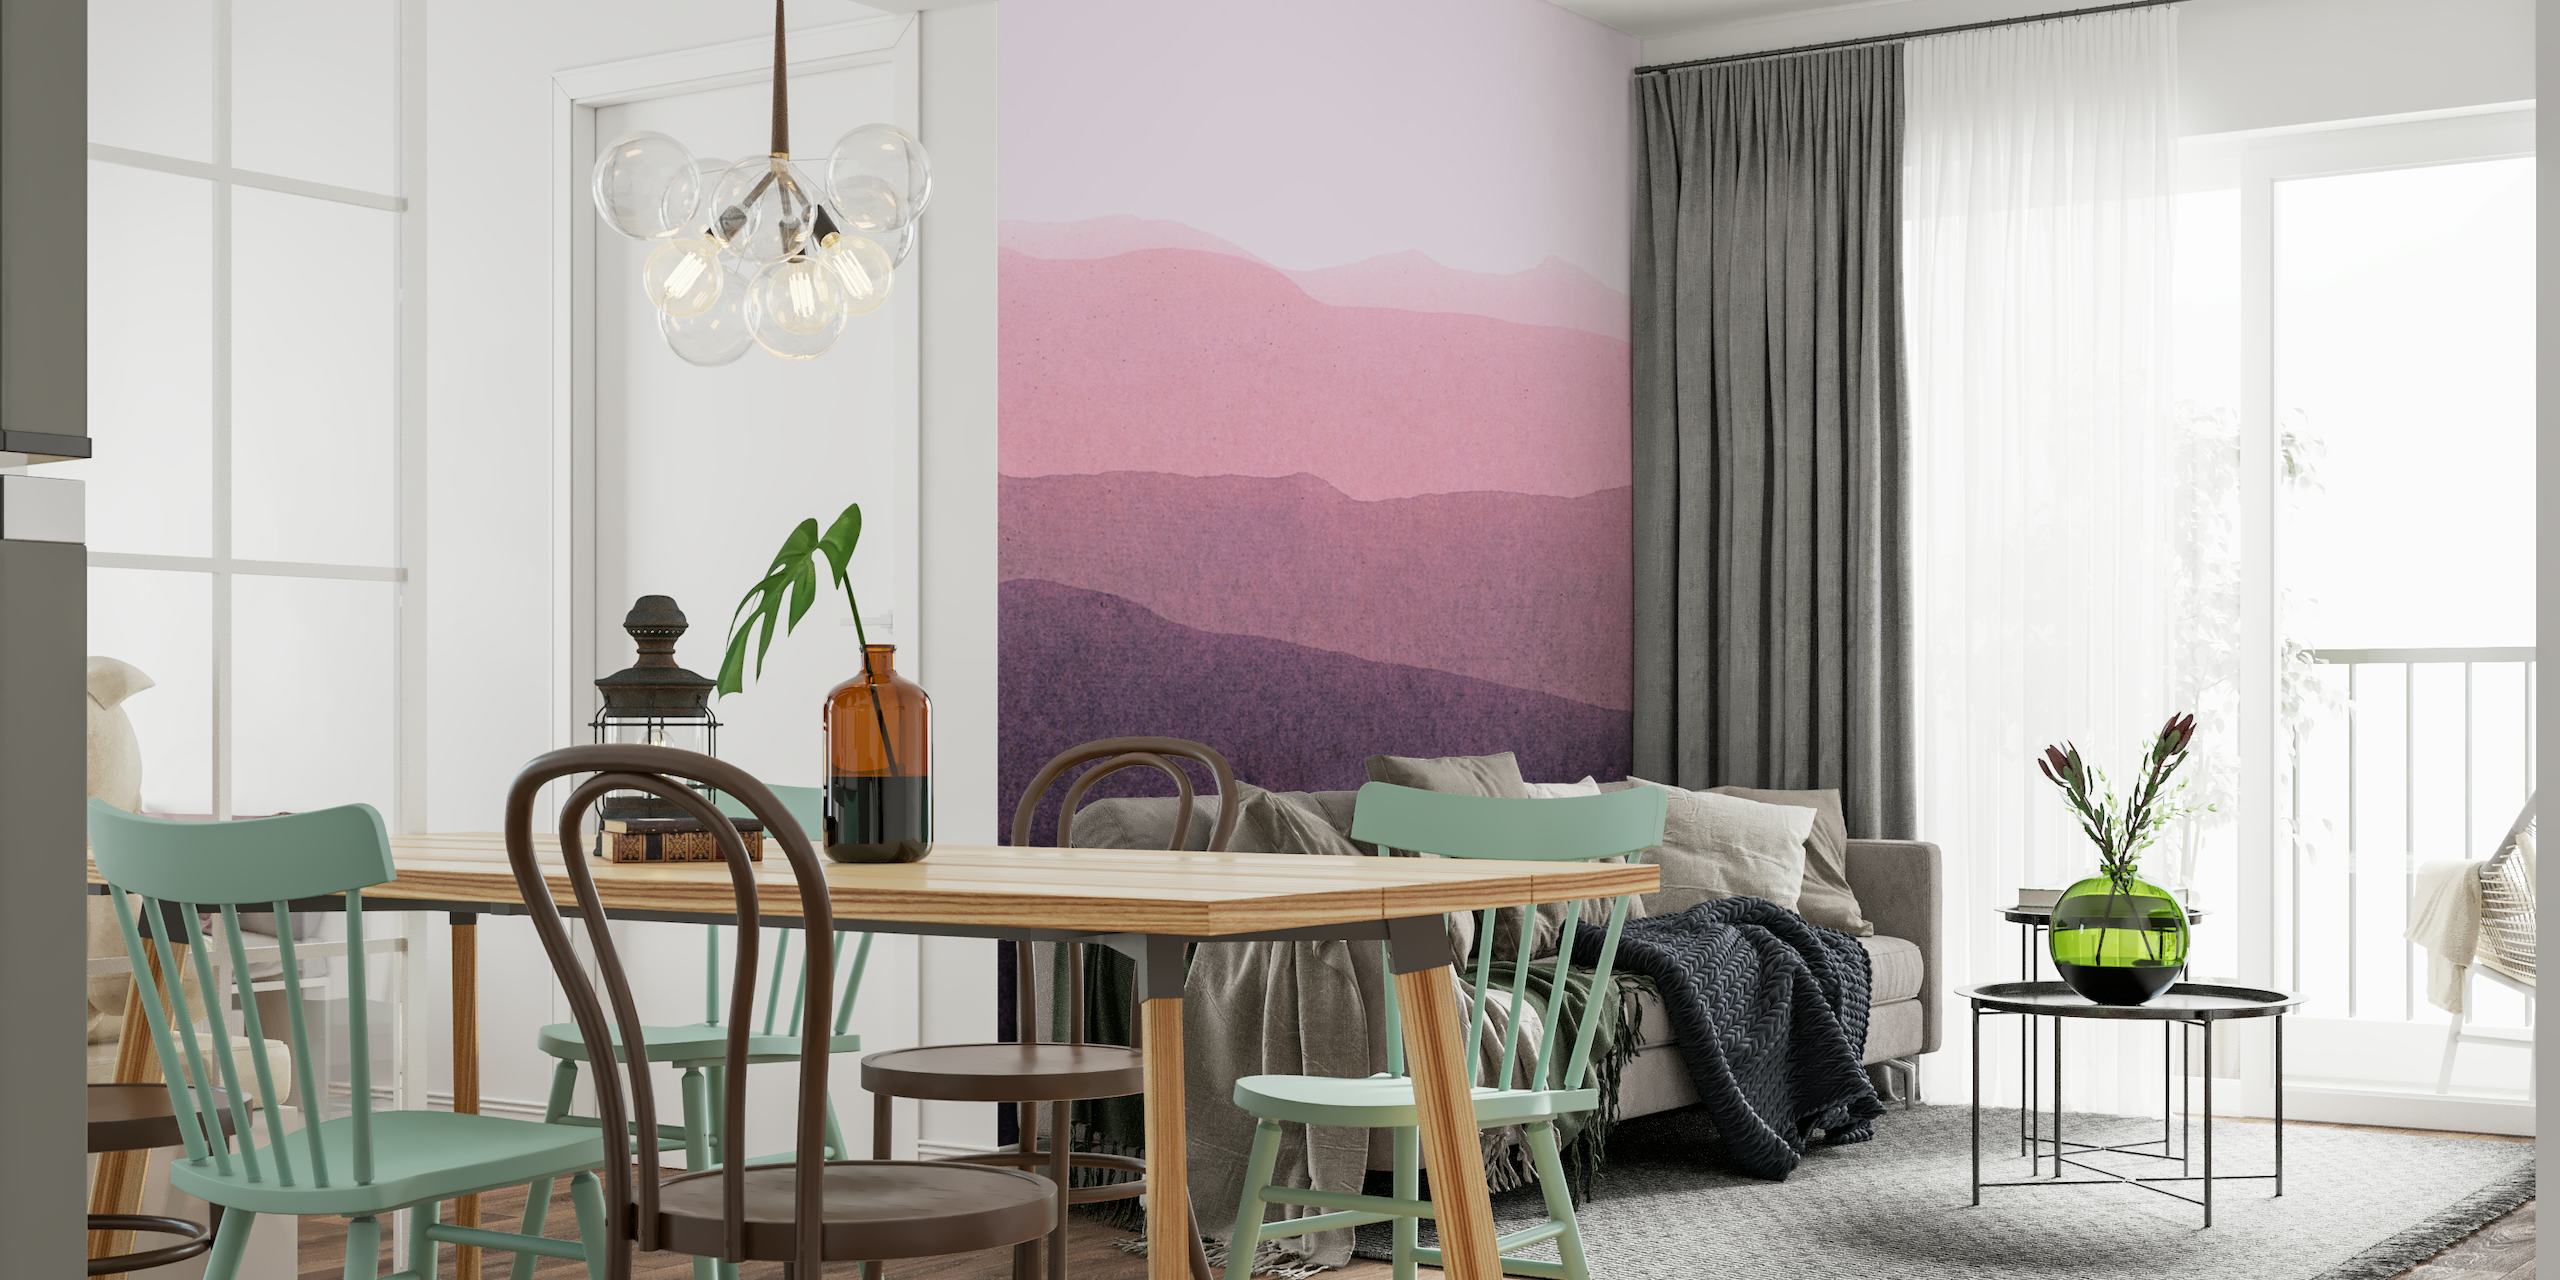 Un mural que muestra un paisaje sereno y degradado con colinas superpuestas en tonos que van del rosa oscuro al morado intenso.